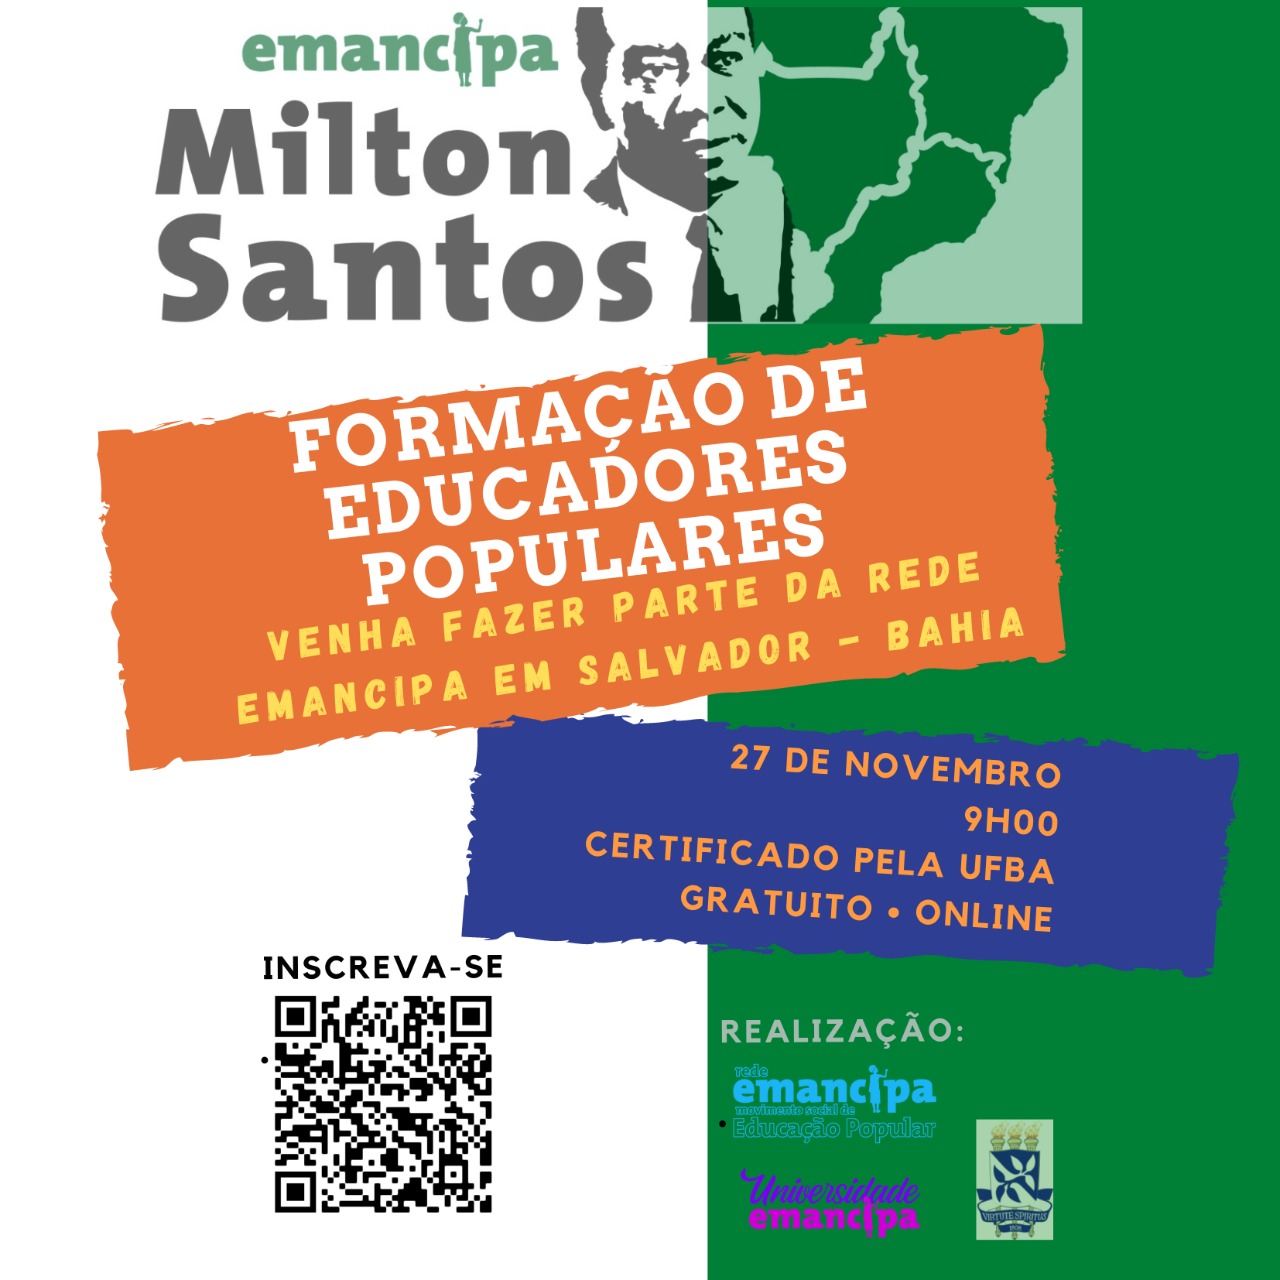 Inscrições abertas para a formação de Educadores Populares – Rede Emancipa/Núcleo Emancipa Milton Santos